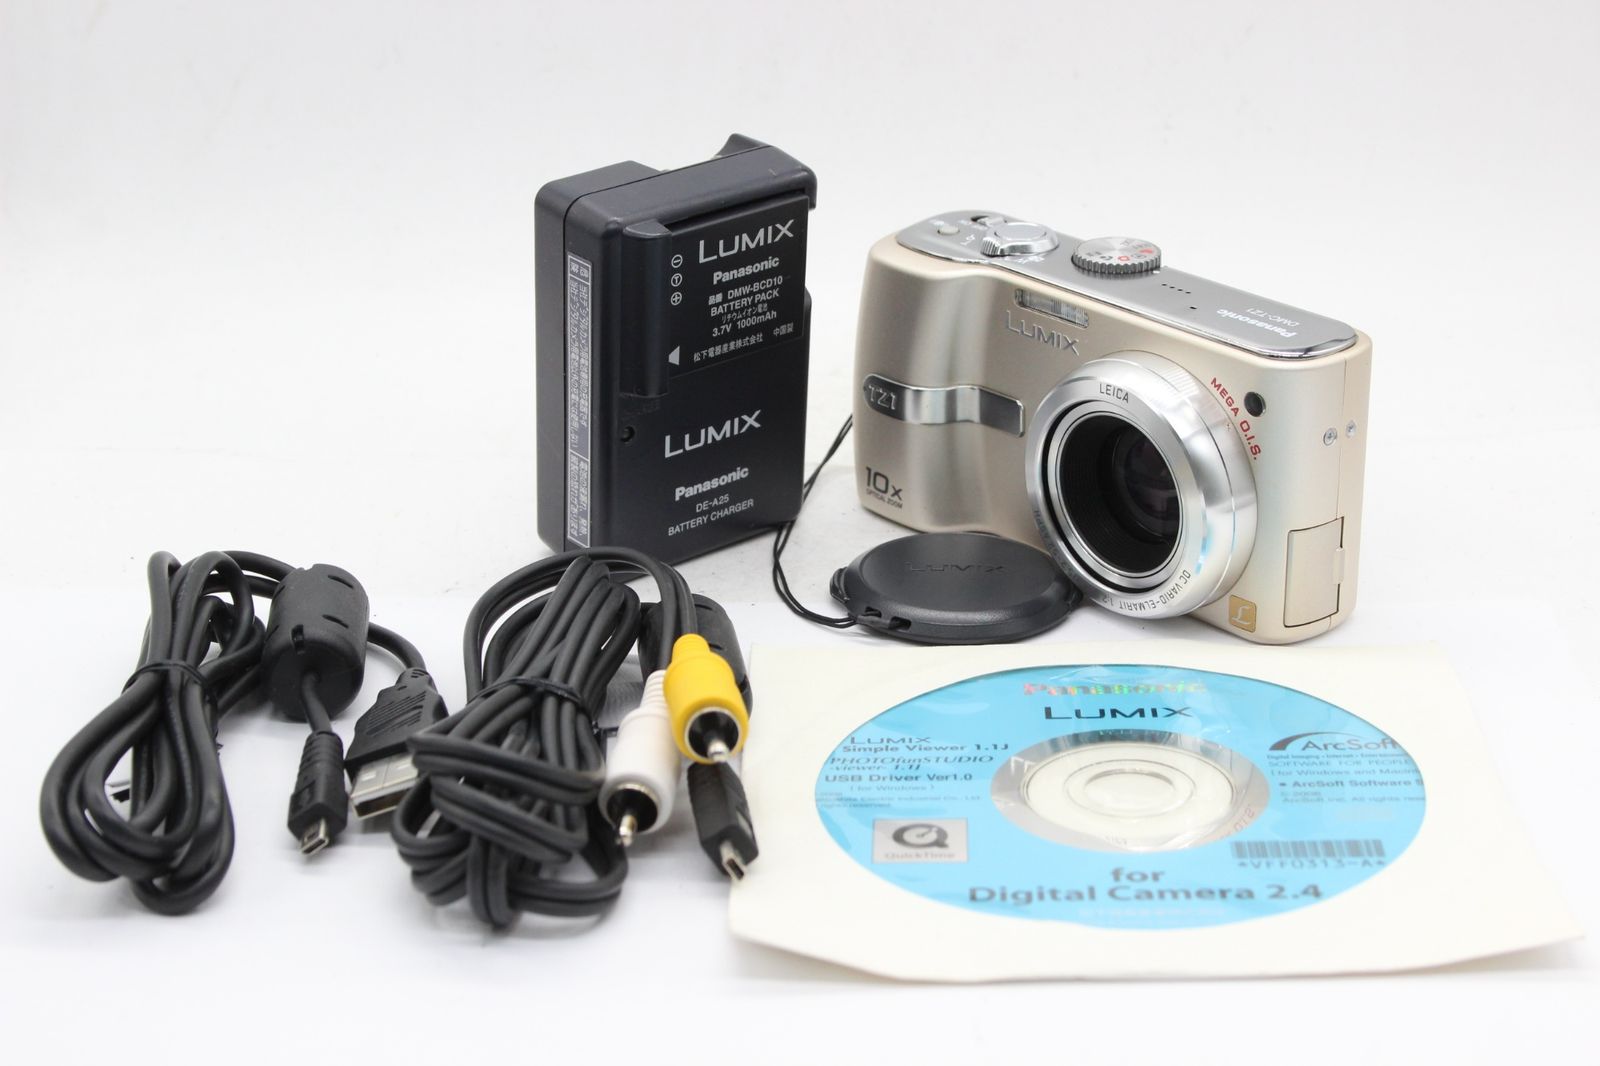 返品保証】 パナソニック Panasonic LUMIX DMC-TZ1 10x バッテリー チャージャー付き コンパクトデジタルカメラ s6681  - メルカリ